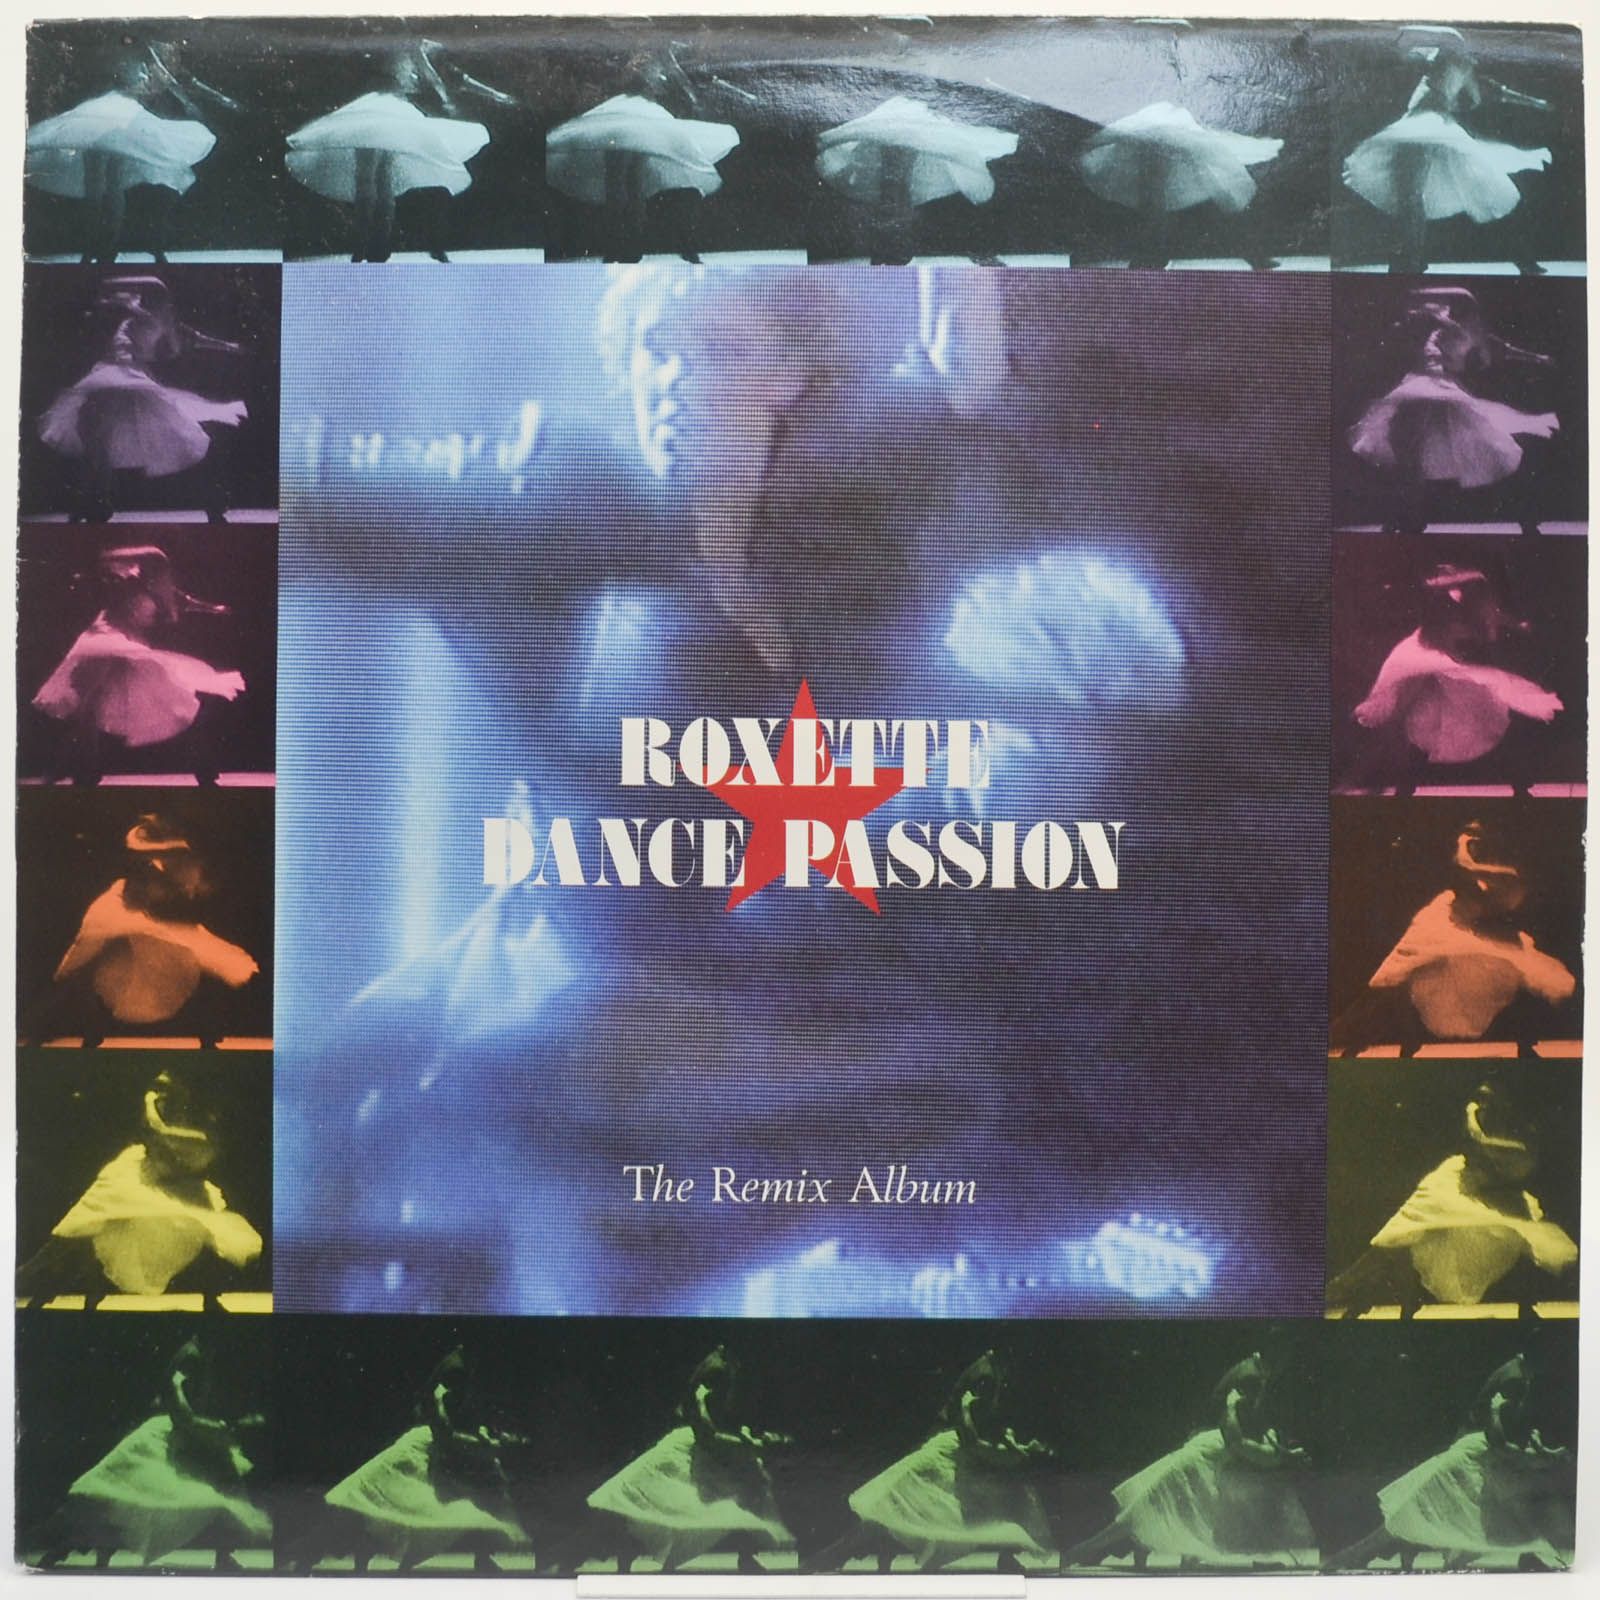 Dance Passion (The Remix Album) (1-st, Sweden), 1987